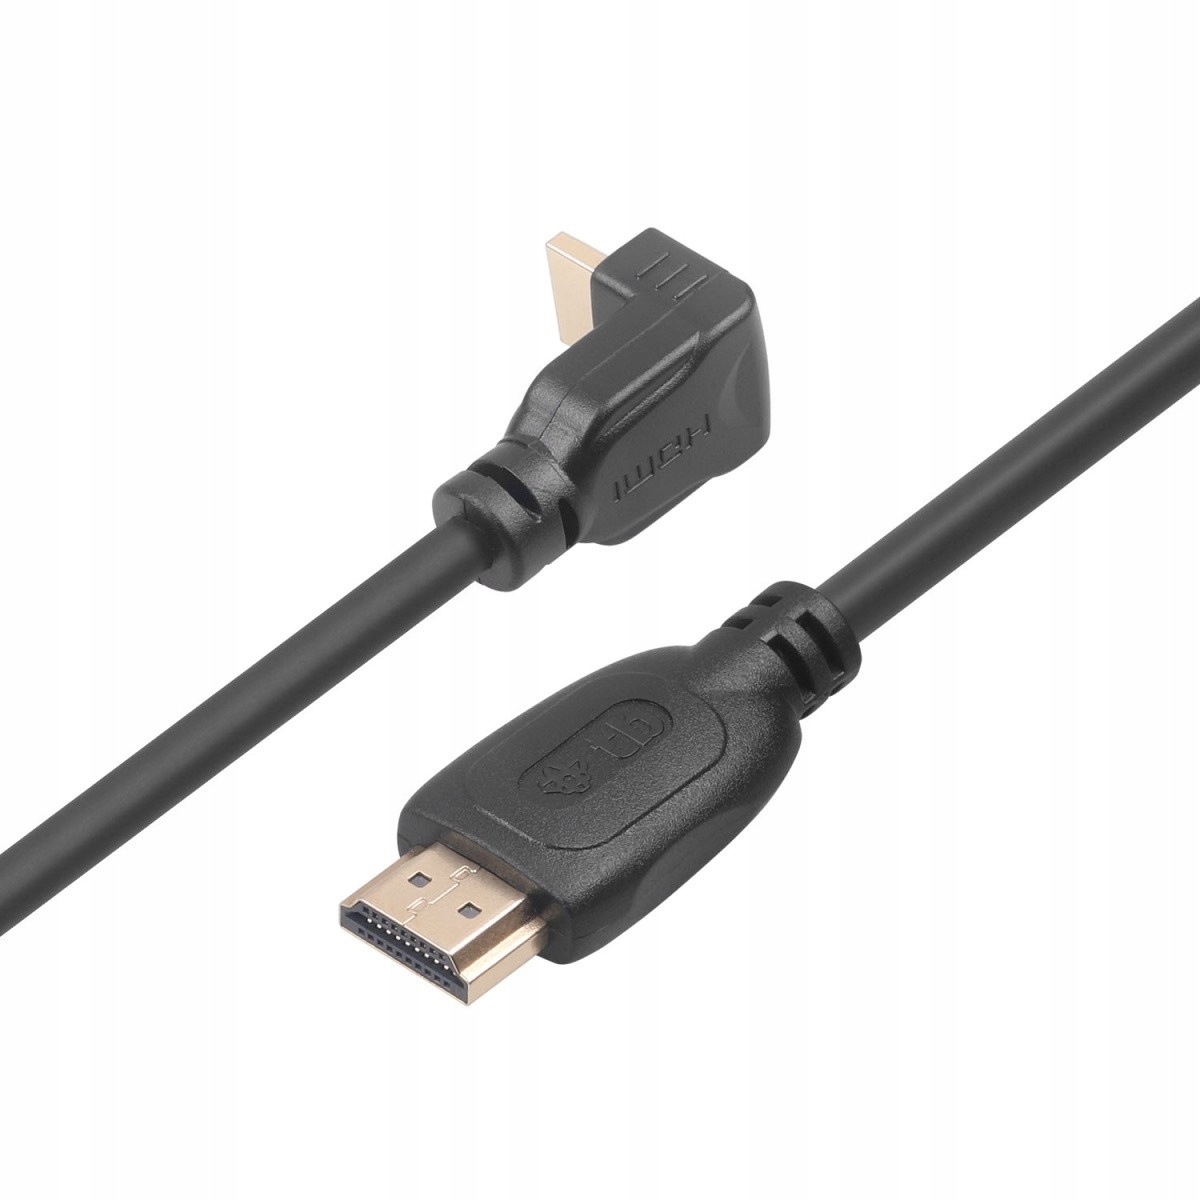 TB кабель HDMI V 2.0 позолоченный 1.8 m угловой код производителя 5901750288357